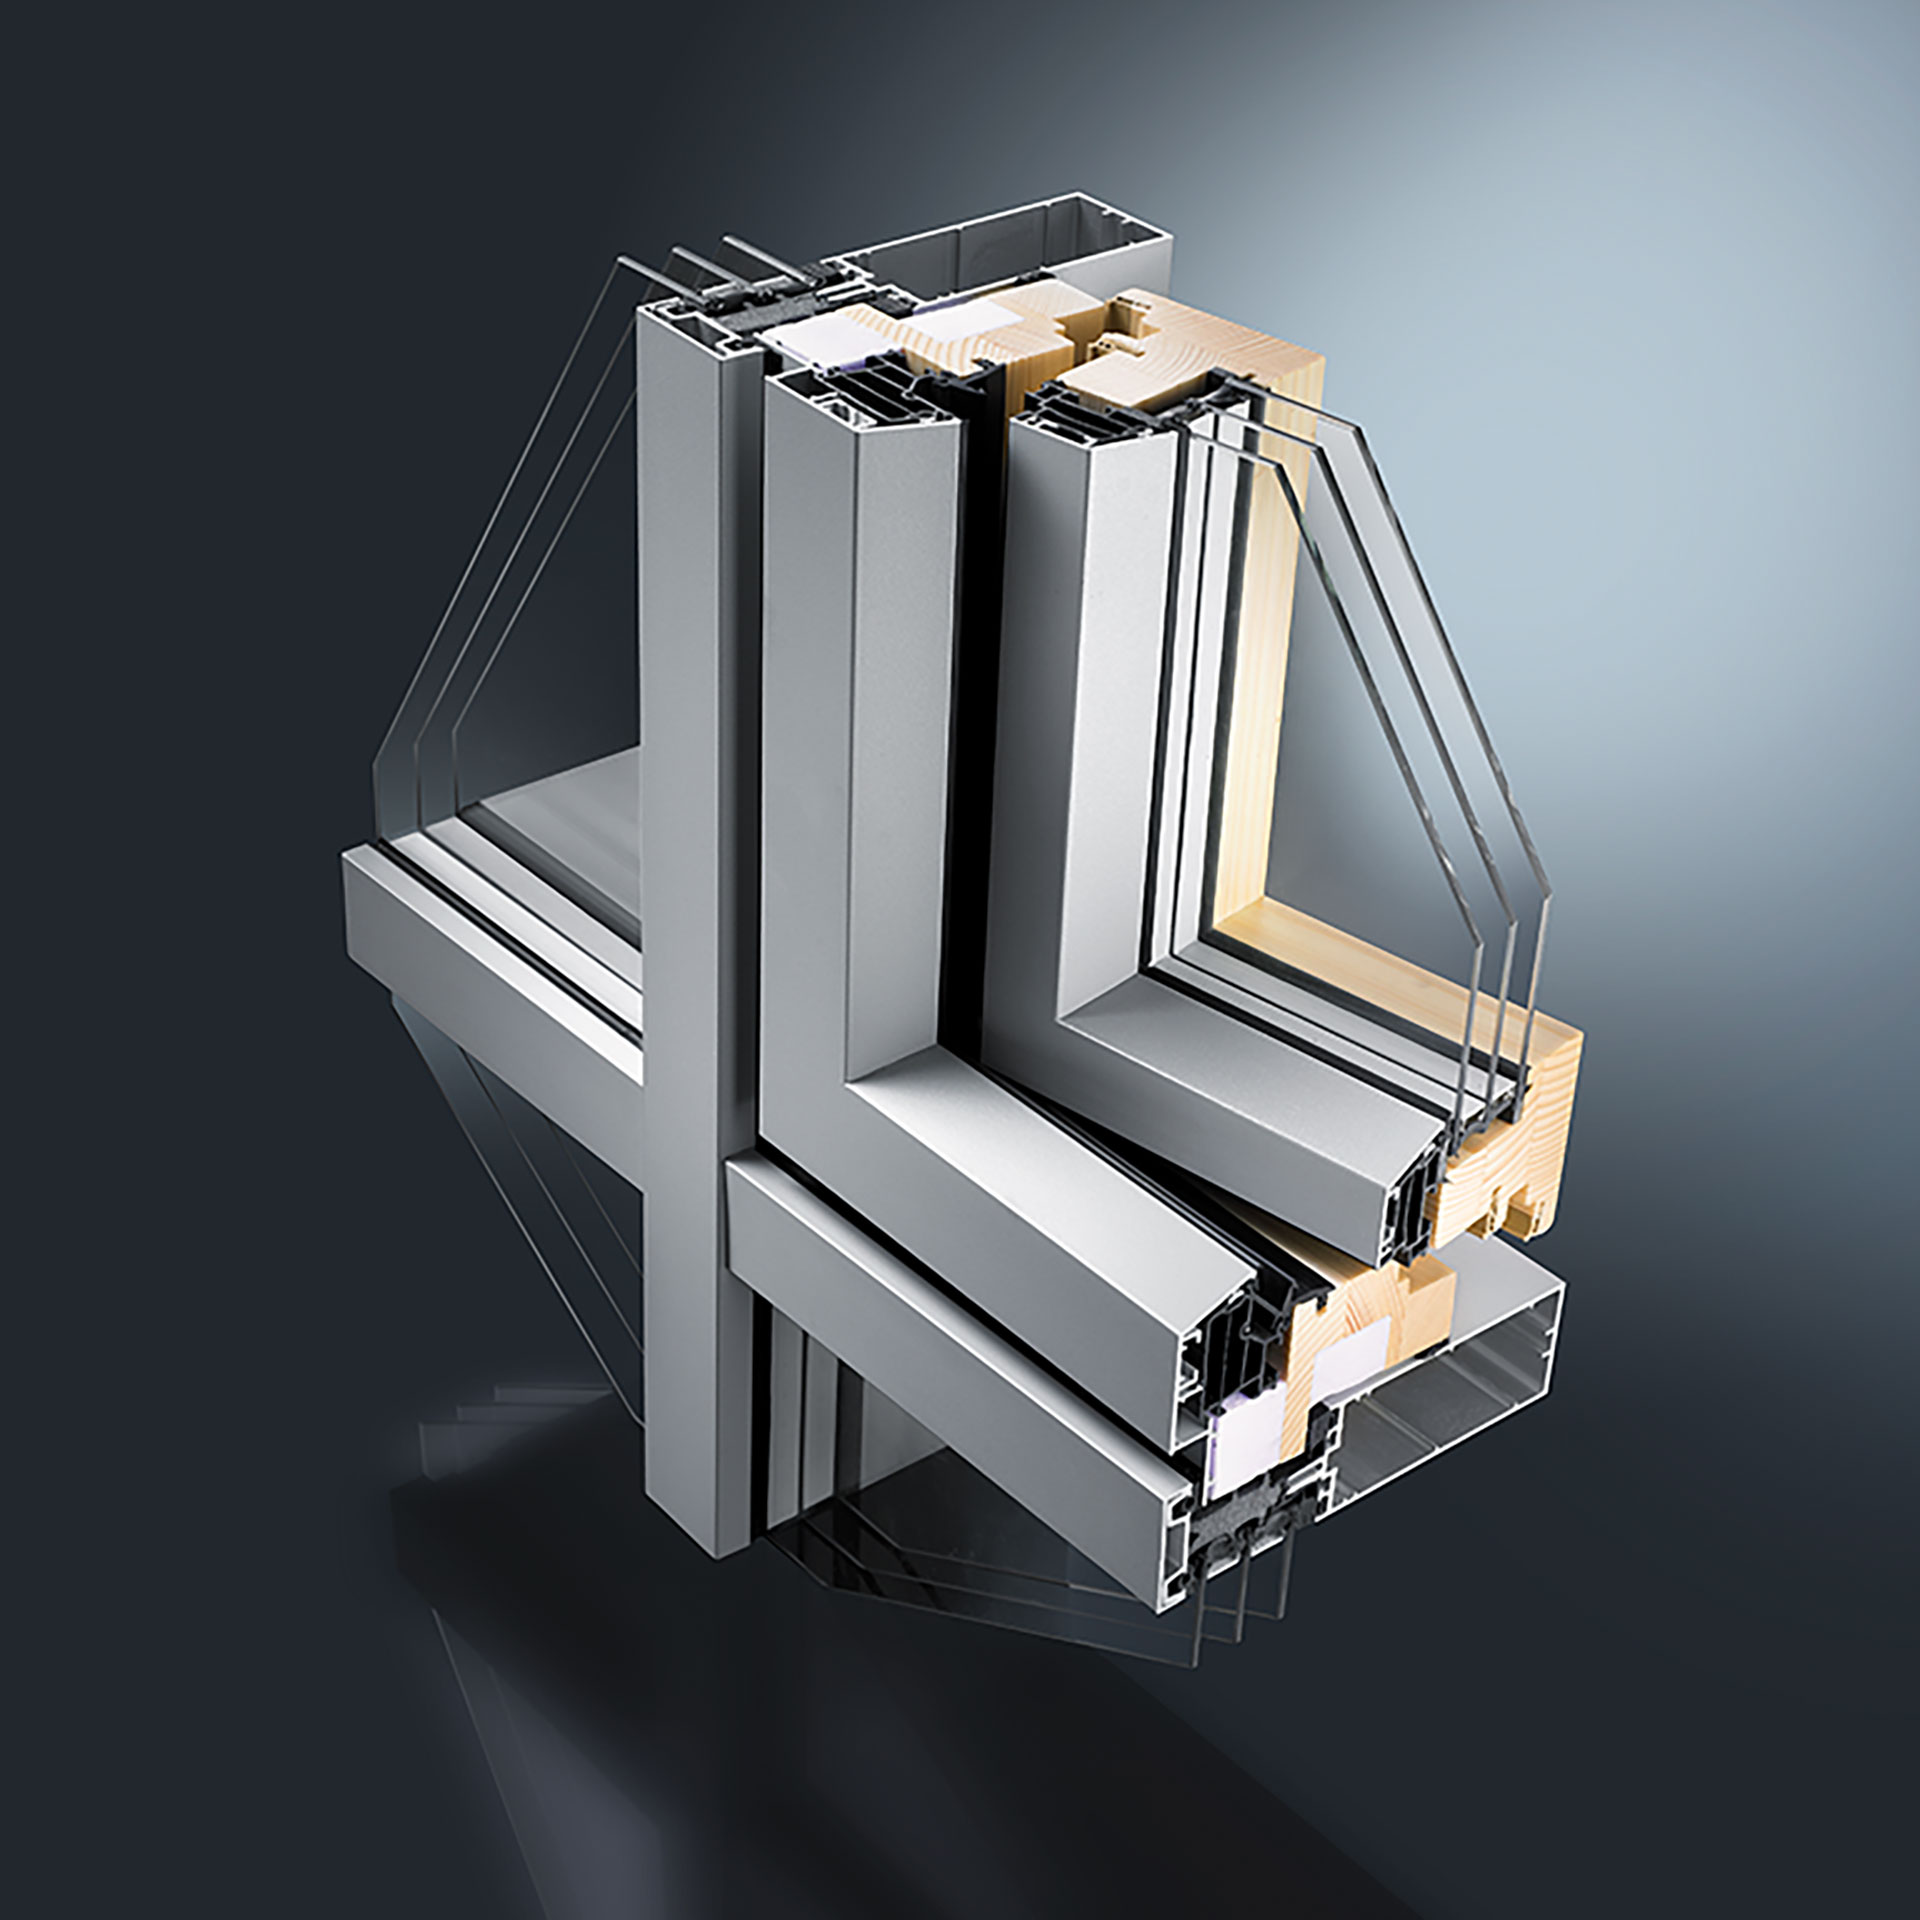 GUTMANN Hybrid Systeme kombinieren die Vorteile verschiedener Rahmen-Materialien für Fenster, Türen und Fassaden: Außen Aluminium für perfekten Wetterschutz, raumseitig natürliches, wohnliches Holz oder pflegeleichter Kunststoff.